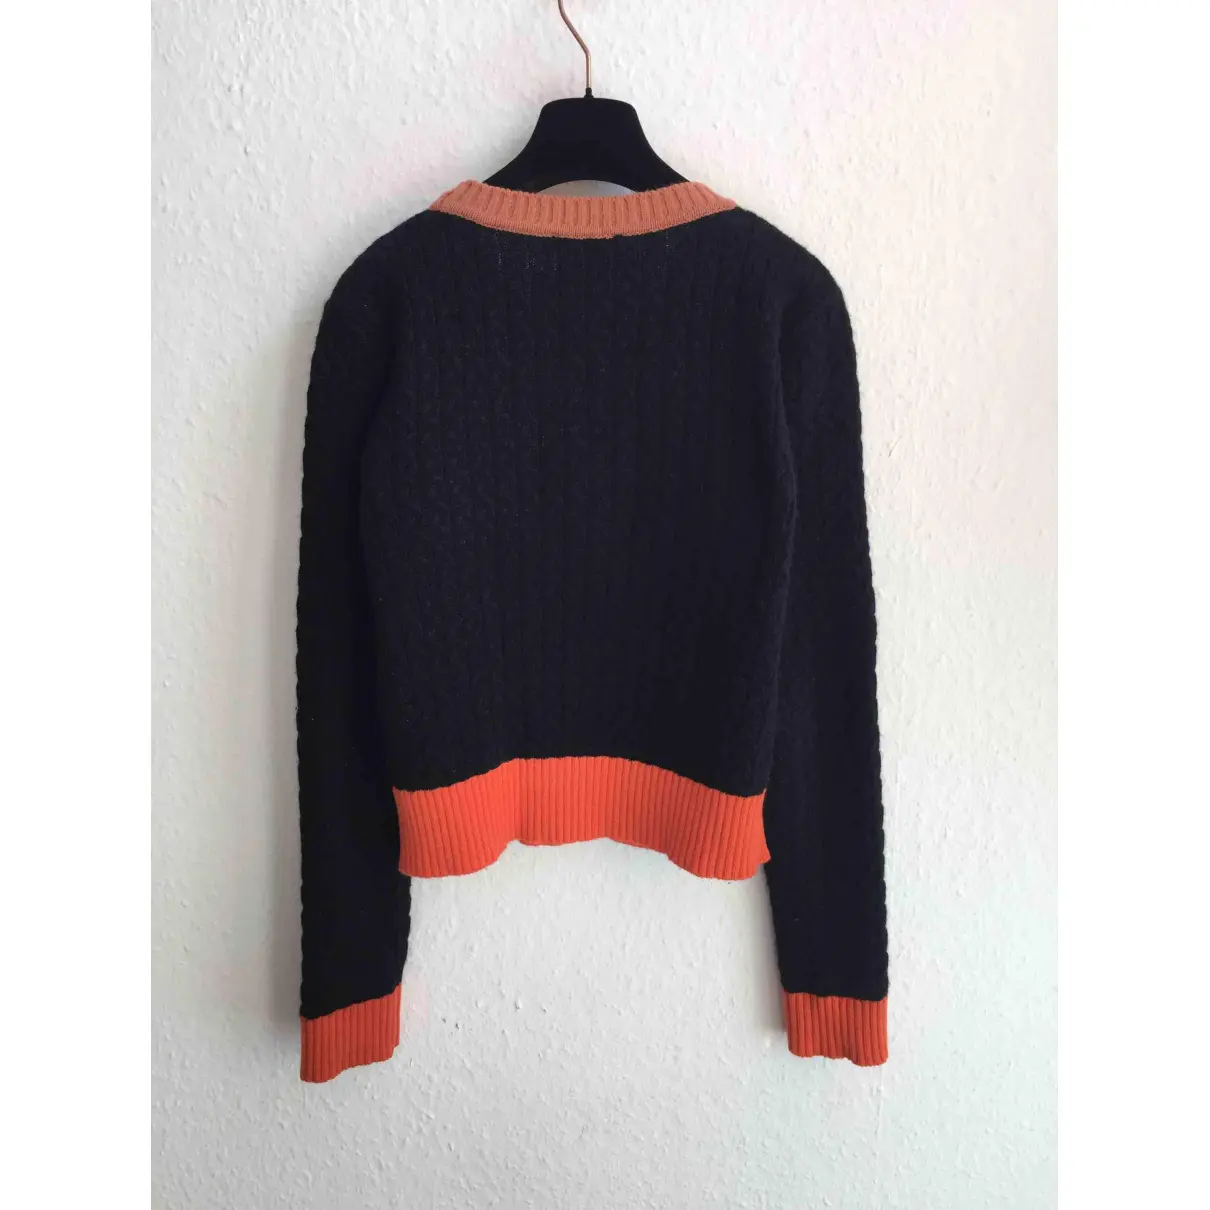 Buy See by Chloé Wool jumper online